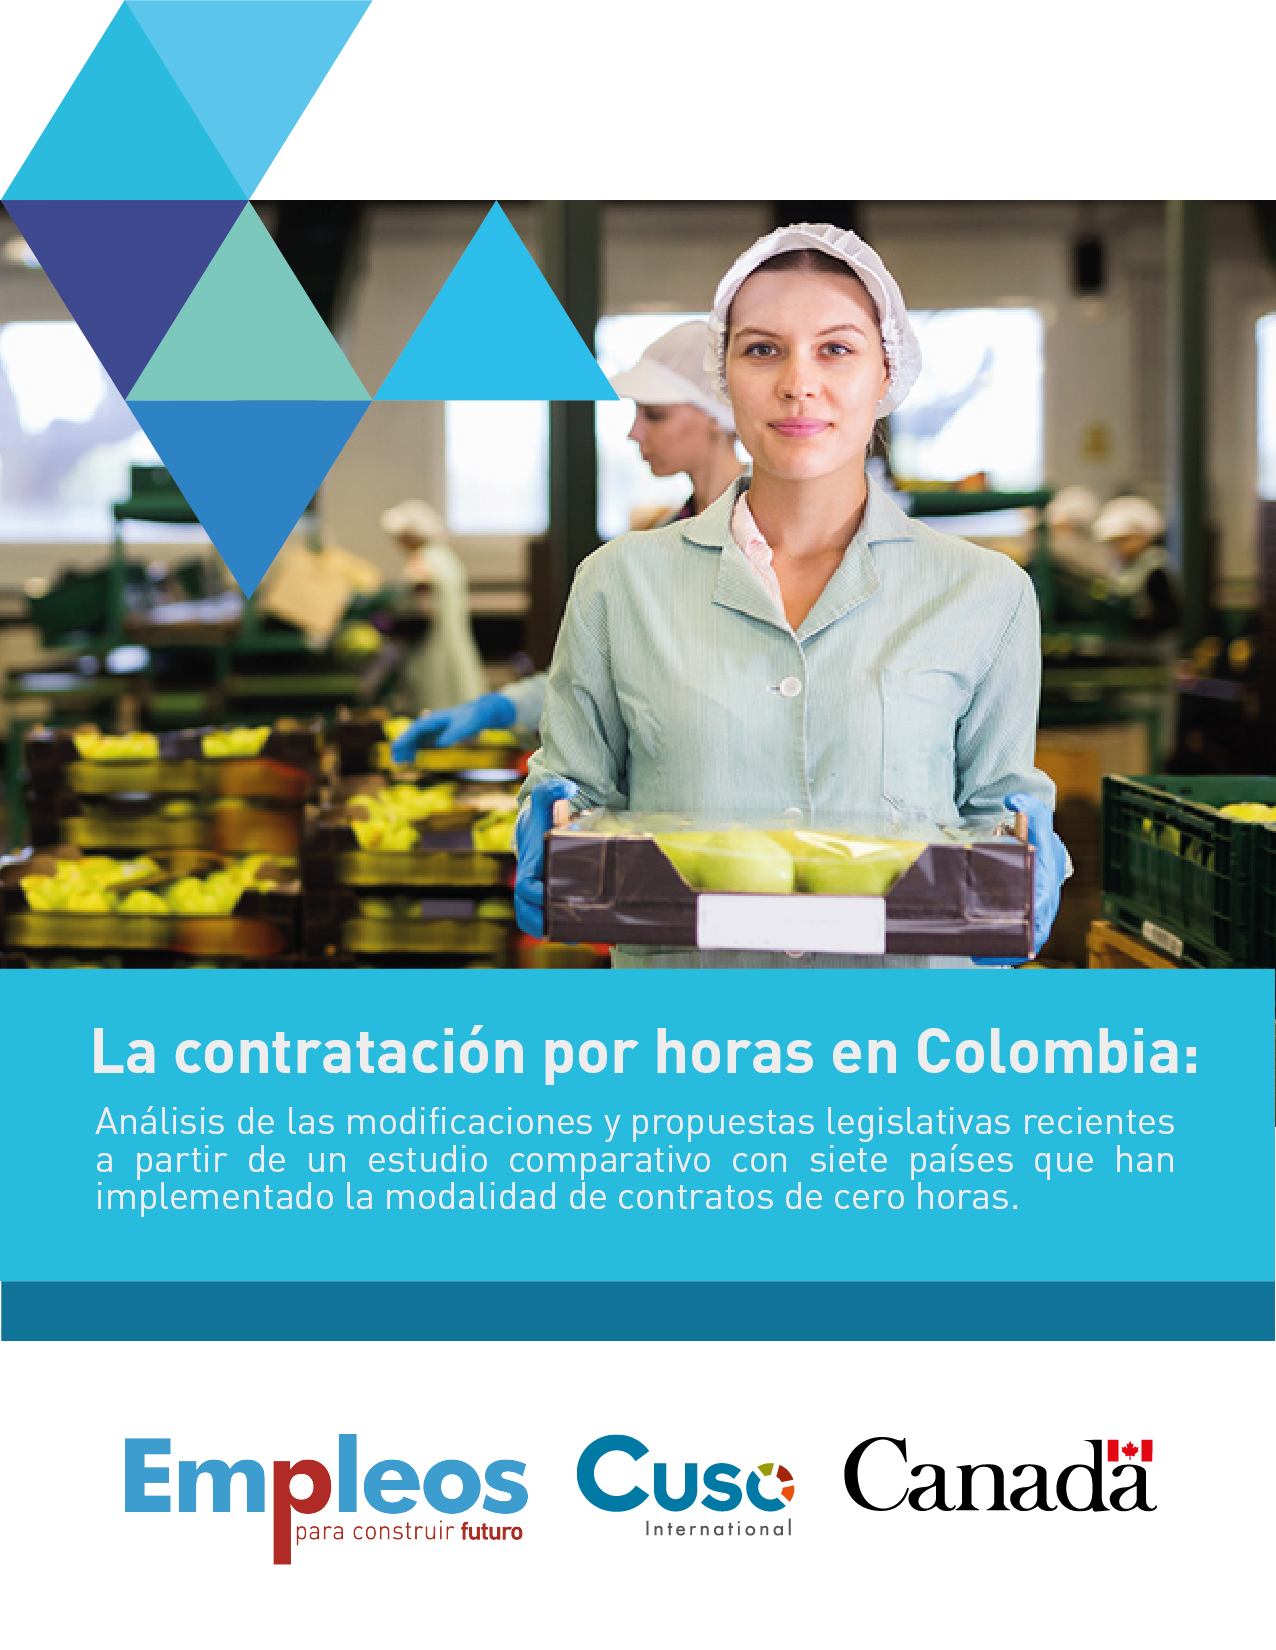 La contratación por horas en Colombia: análisis de las modificaciones y propuestas legislativas recientes a partir de un estudio comparativo con siete países que han implementado la modalidad de contratos de cero horas